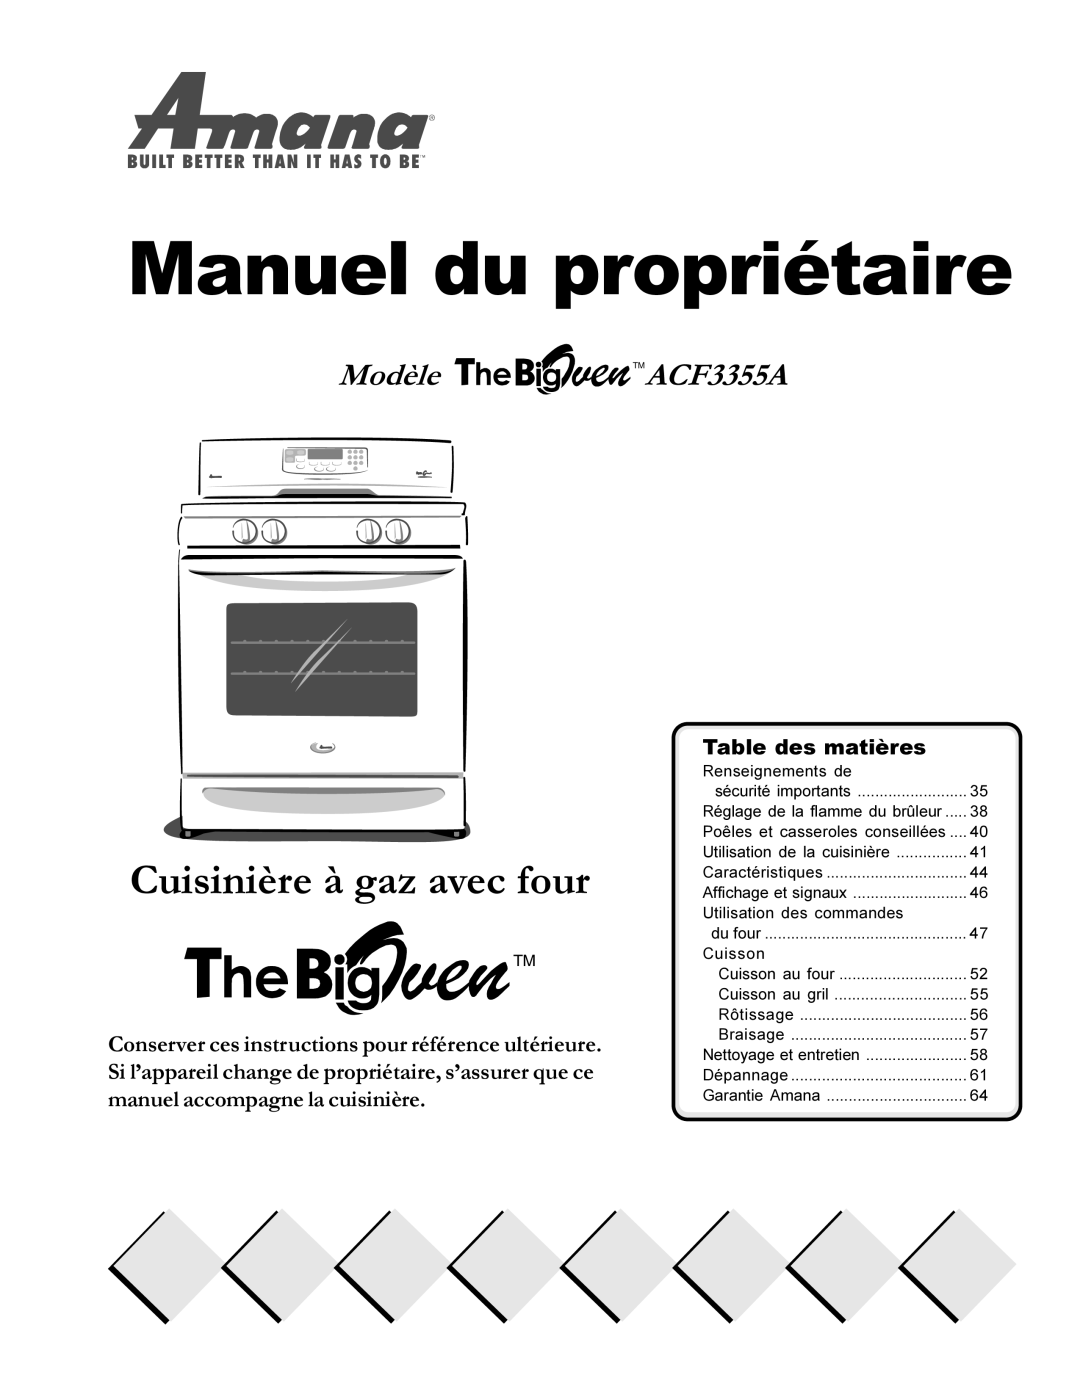 Amana The Big Oven Gas Range Cuisinière à gaz avec four, Modèle TMACF3355A, Manuel du propriétaire, Table des matières 